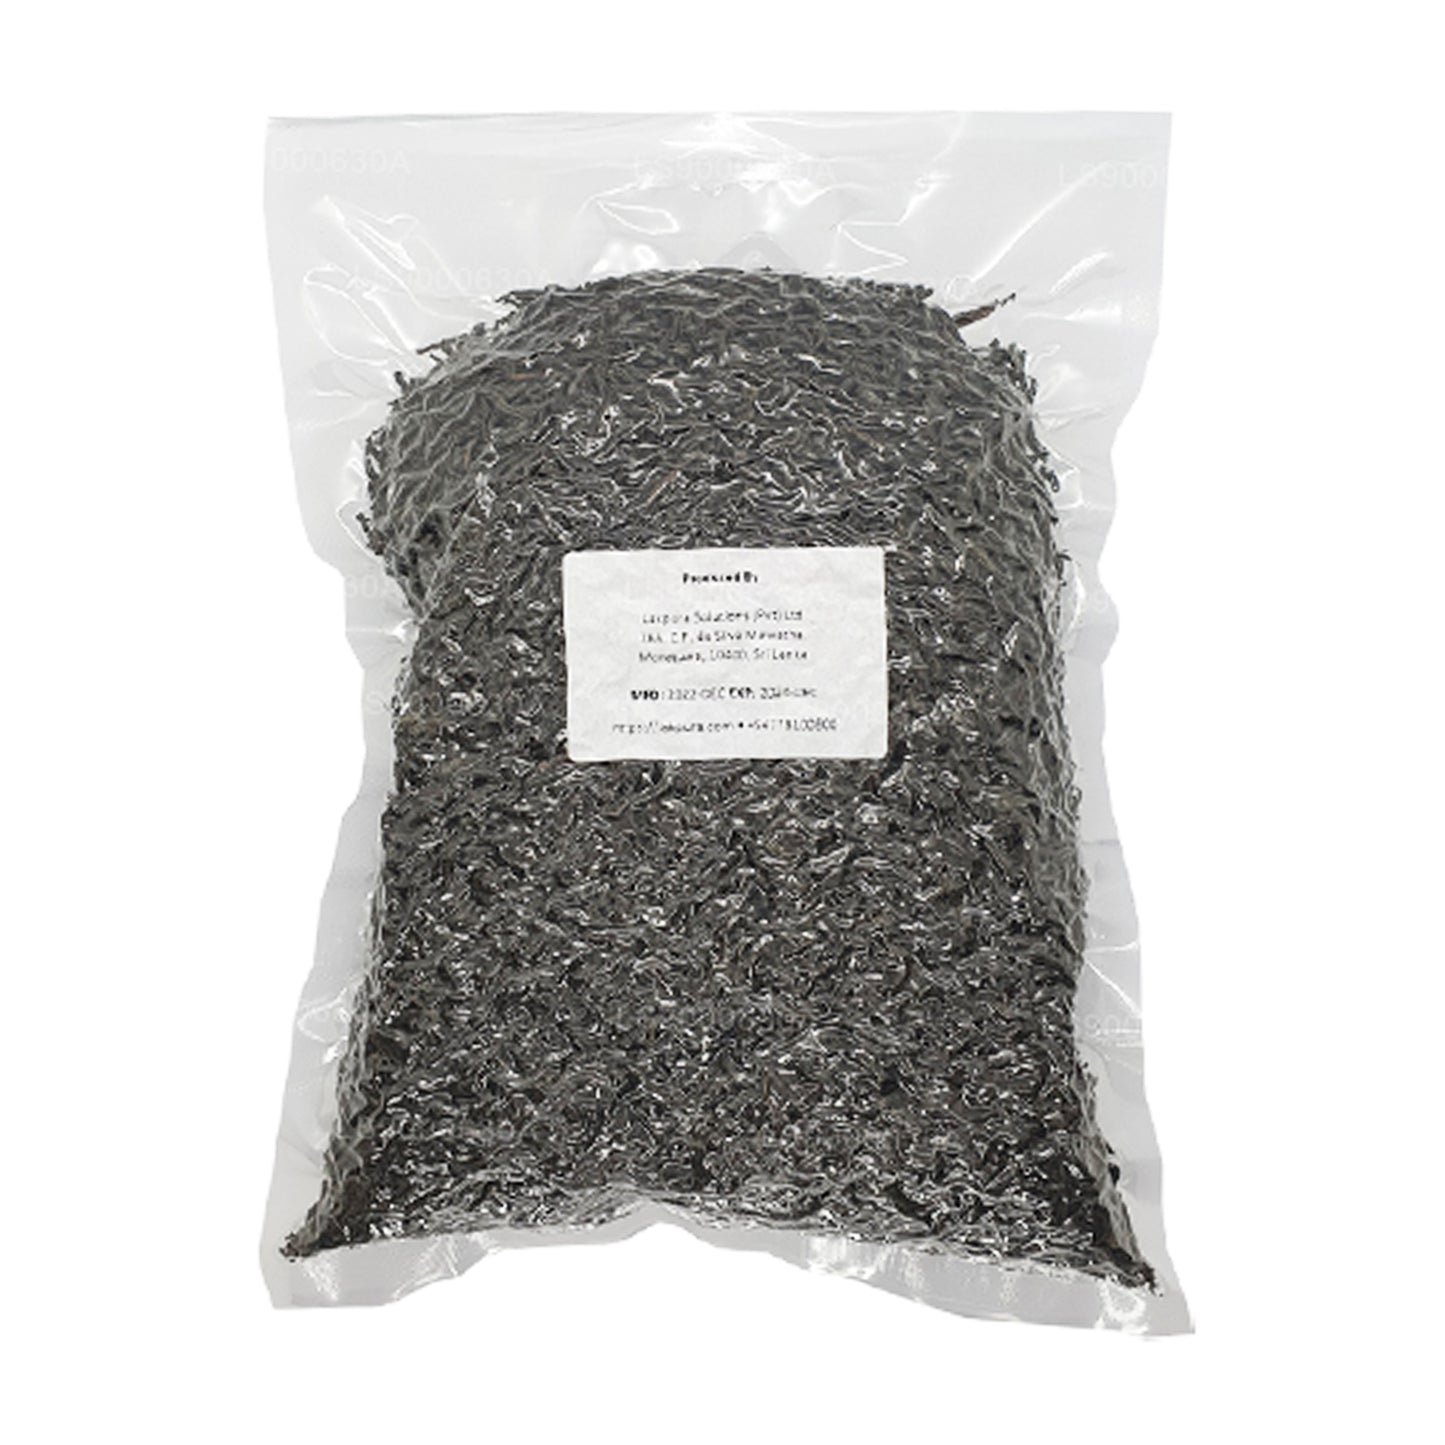 Lakpura Single Region (Ruhuna) OPA Grade Ceylon Black Leaf Tea (500g) Pack